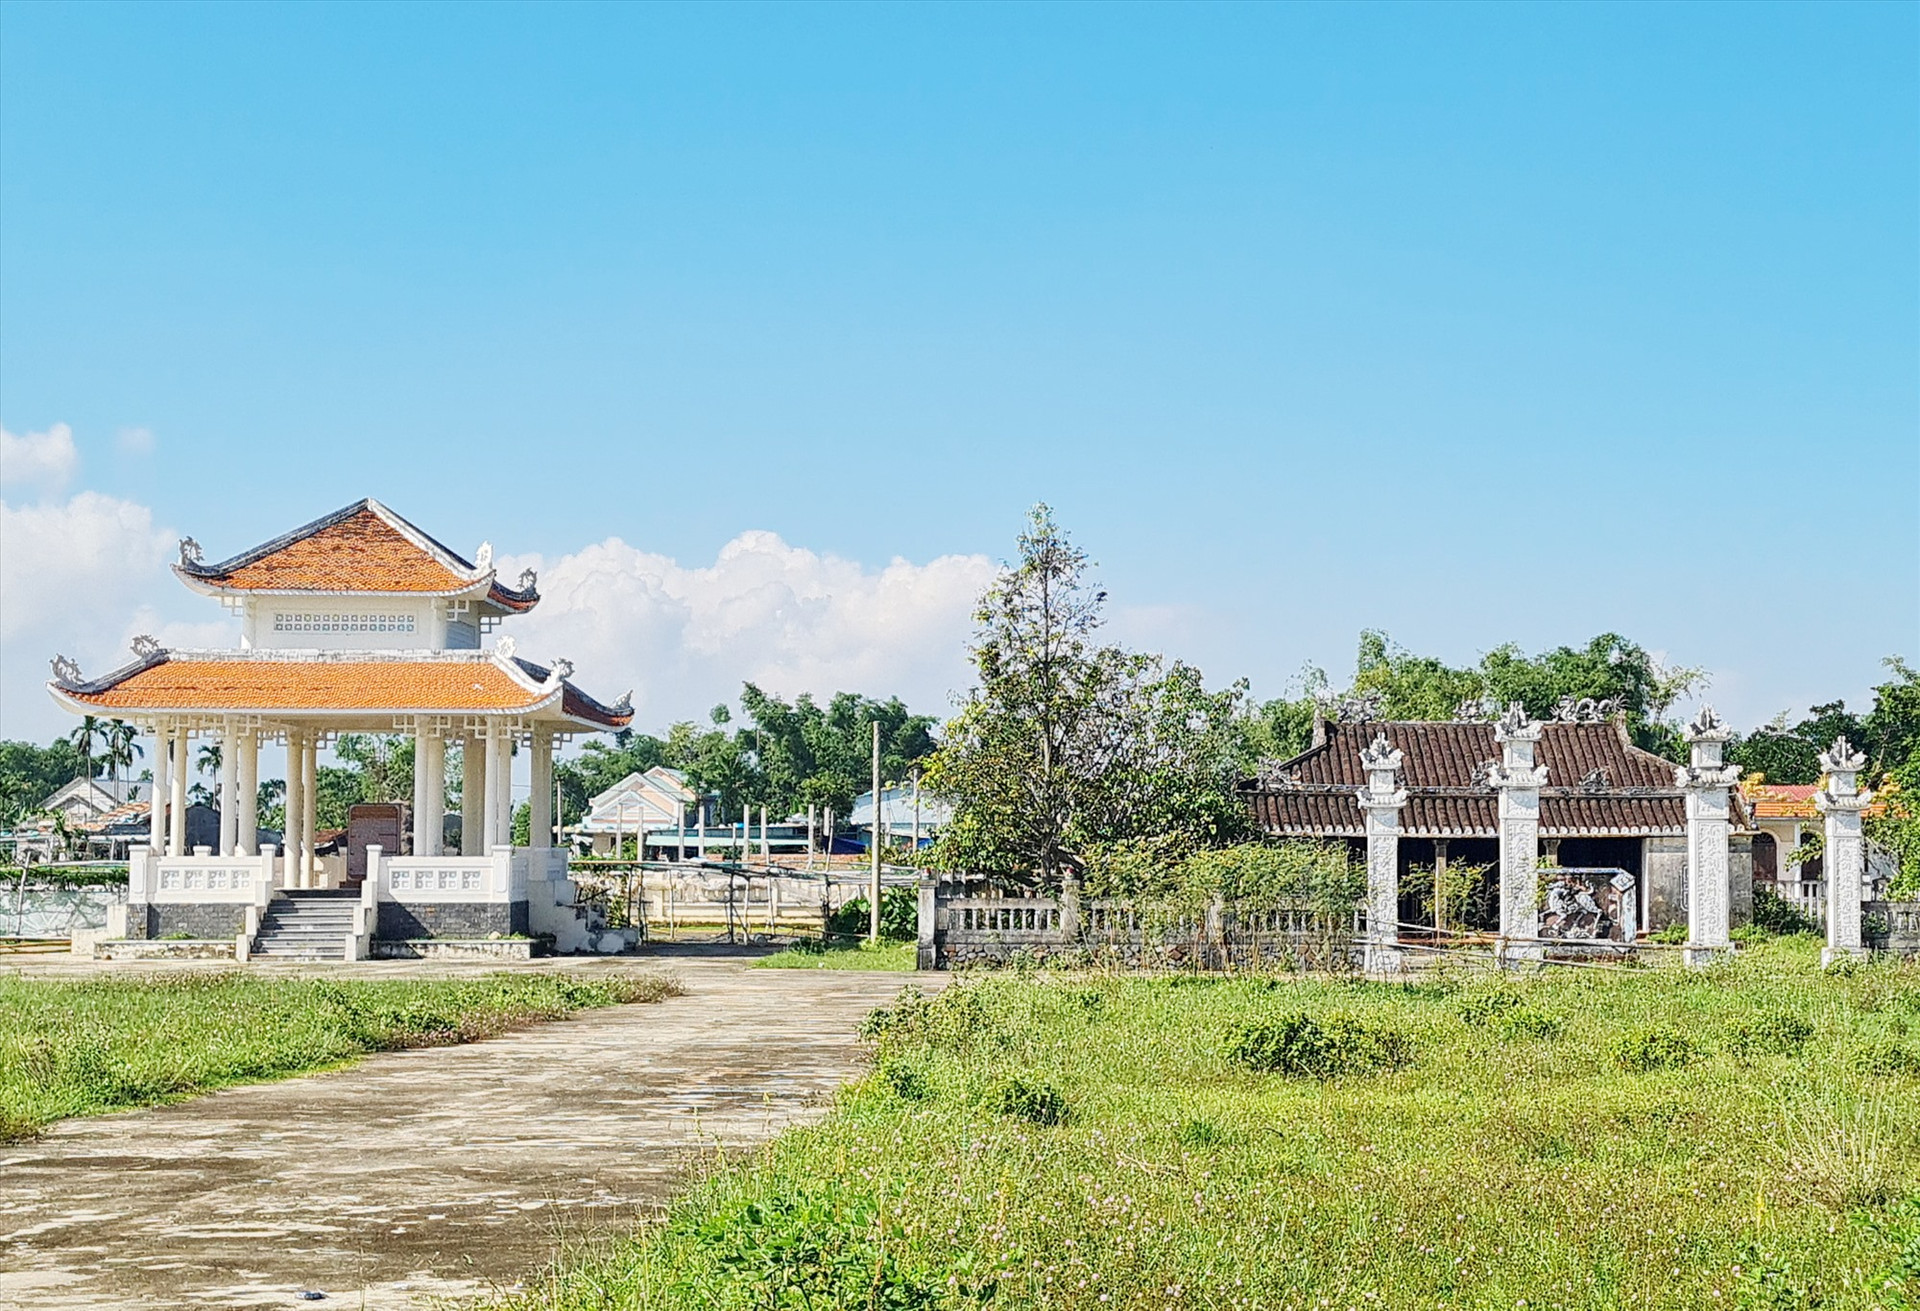 Di tích đình làng Phiếm Ái (Đại Lộc) được xếp hạng di tích cấp quốc gia. Ảnh: Hoàng Liên